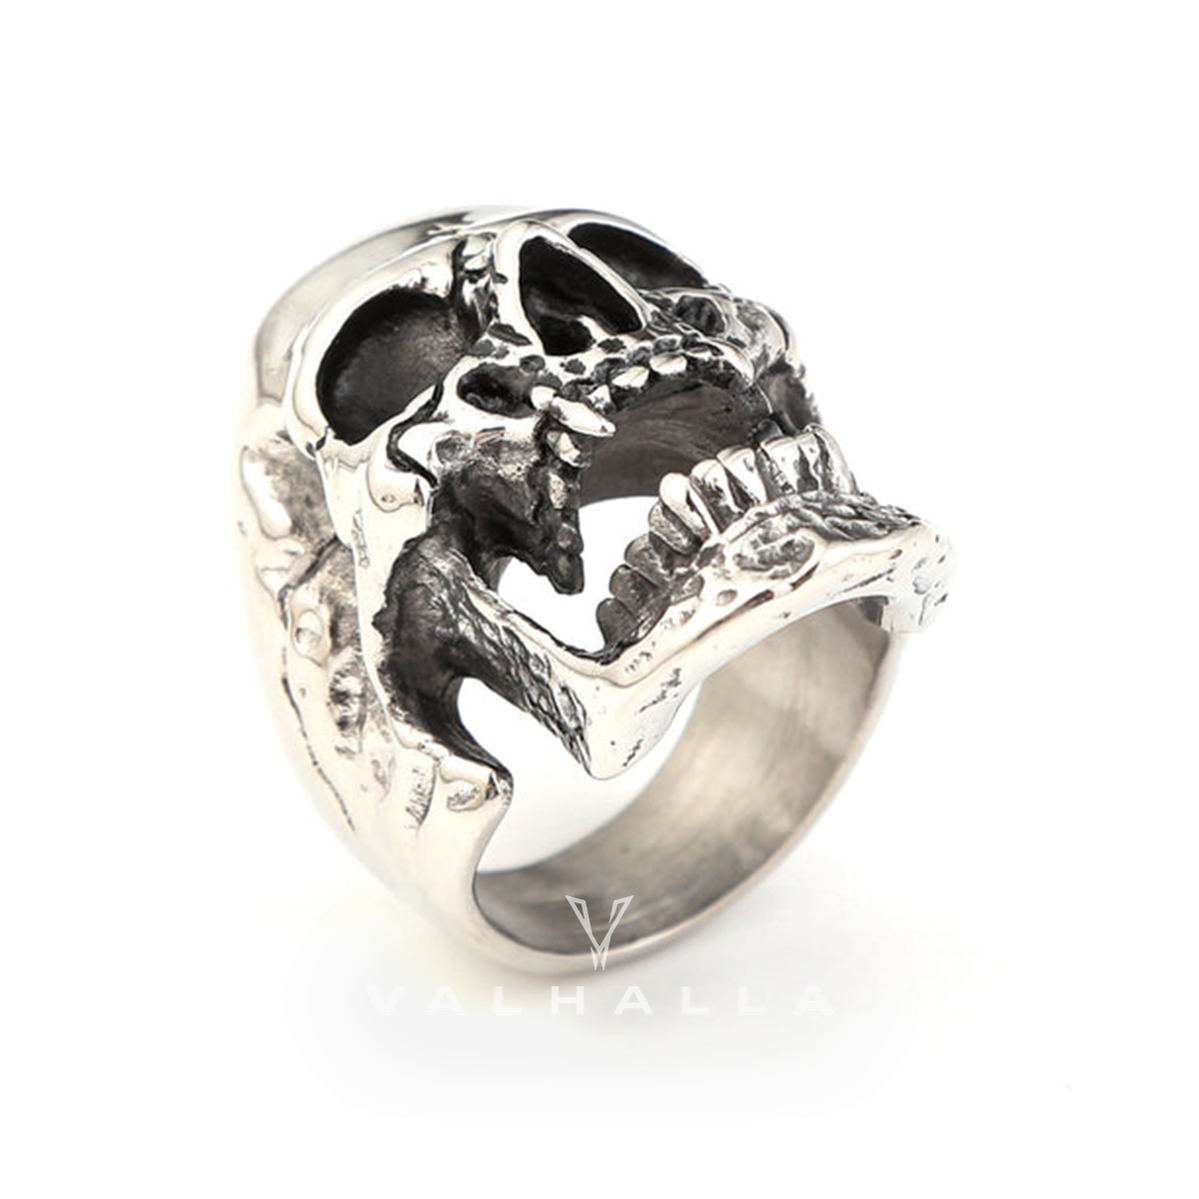 Roaring Stainless Steel Skull Ring